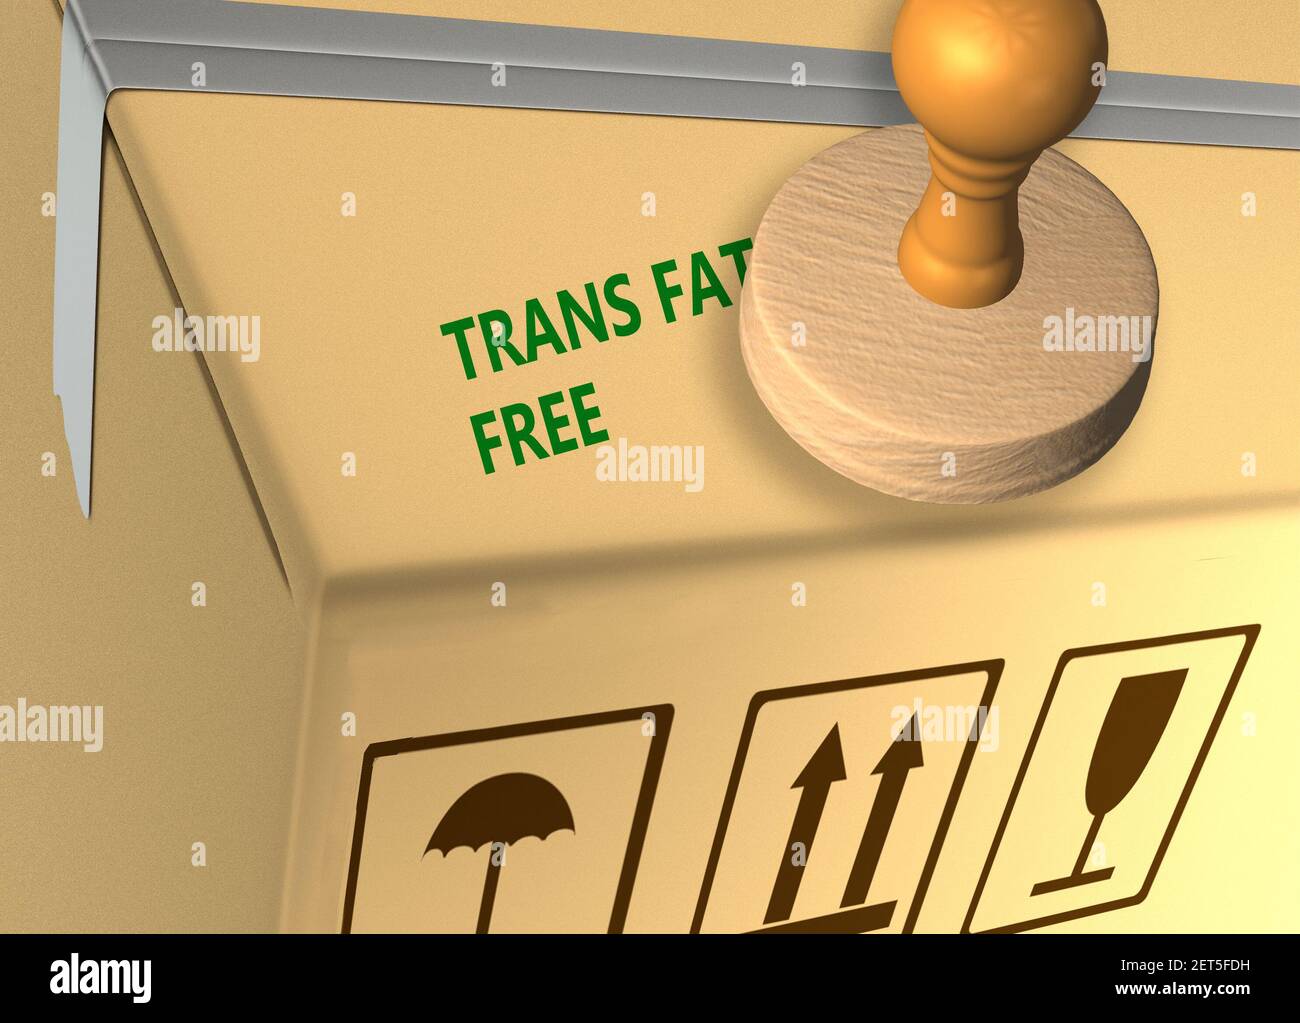 Illustration 3D du titre du tampon TRANS FAT FREE sur un boîte de marchandise Banque D'Images